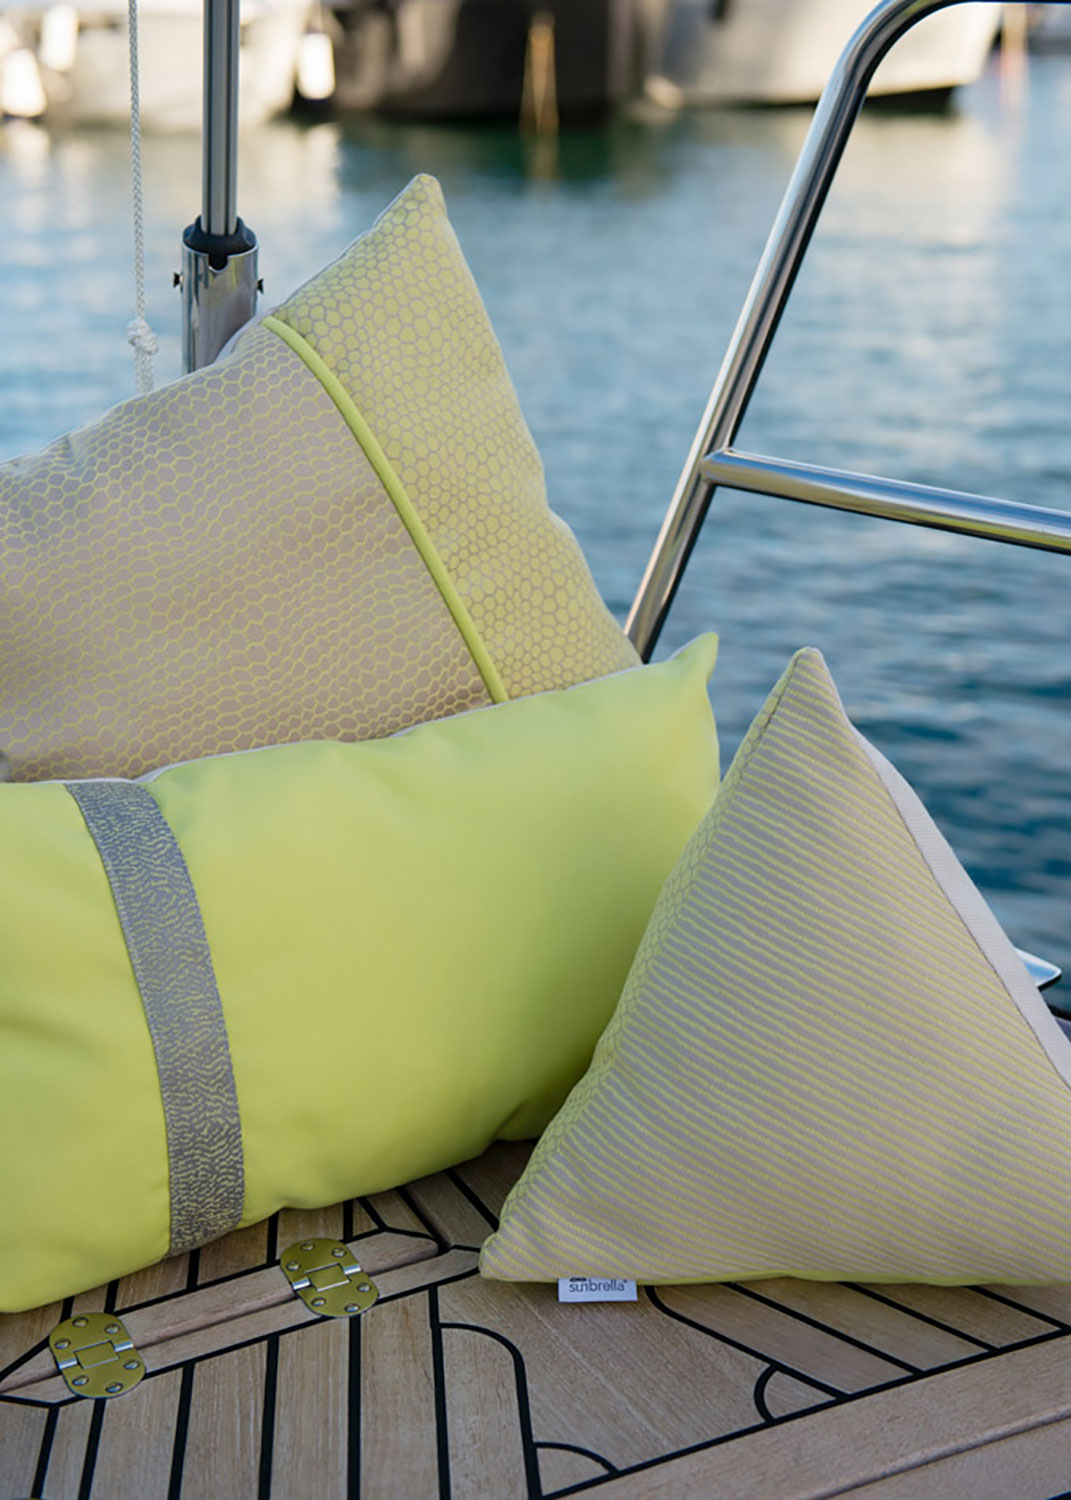 Citrongula Sunbrella-tyger utgör en färgklick på detta båtdäck.